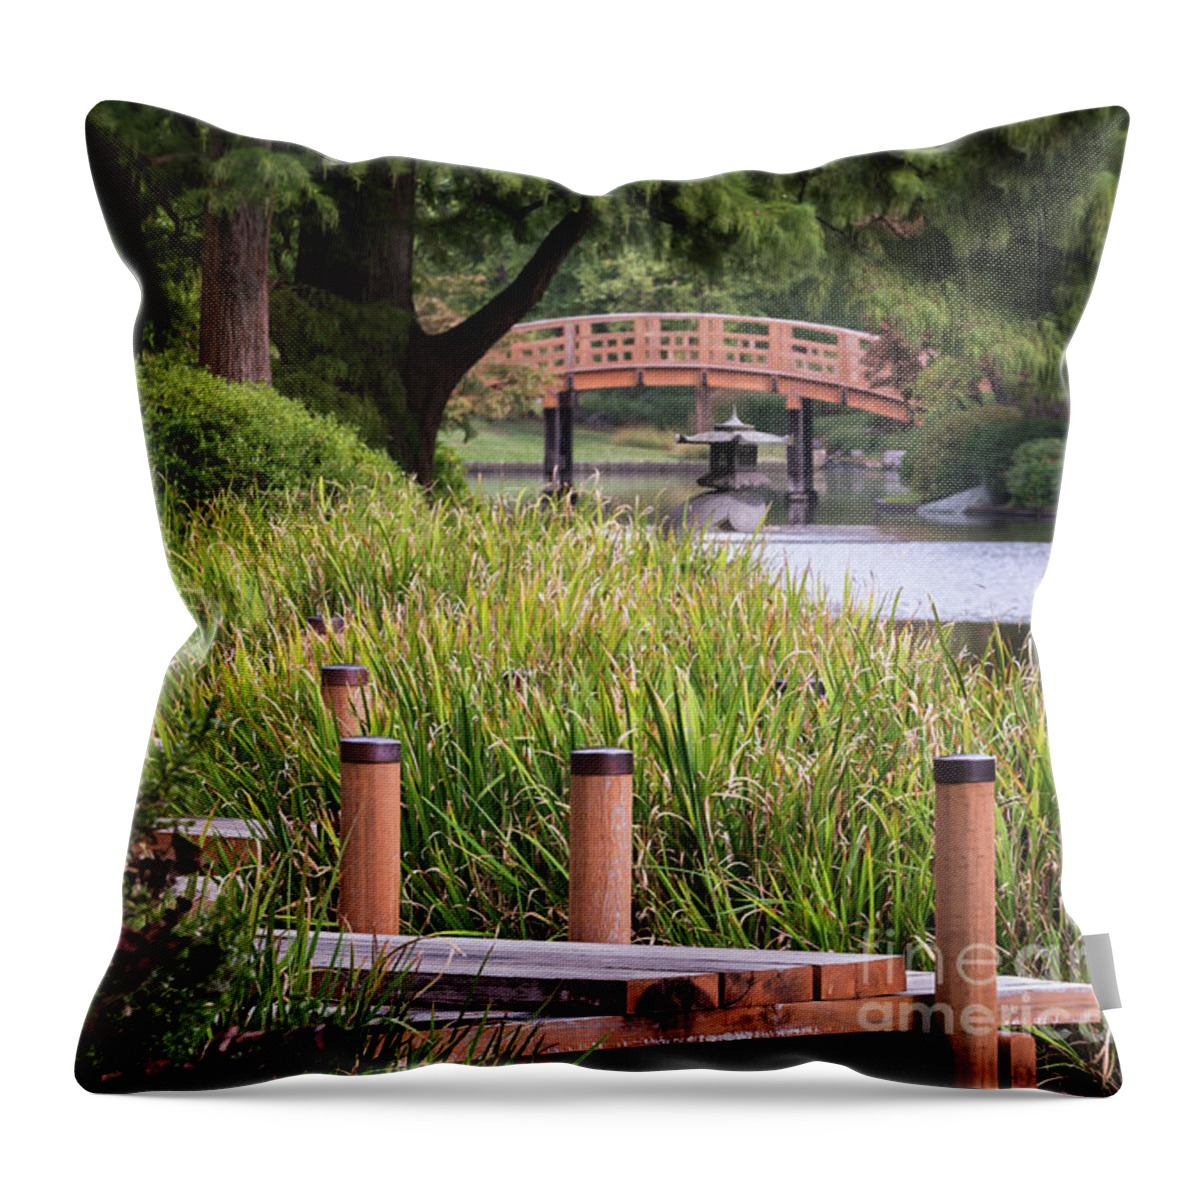 Garden Throw Pillow featuring the photograph Zen Garden by Andrea Silies